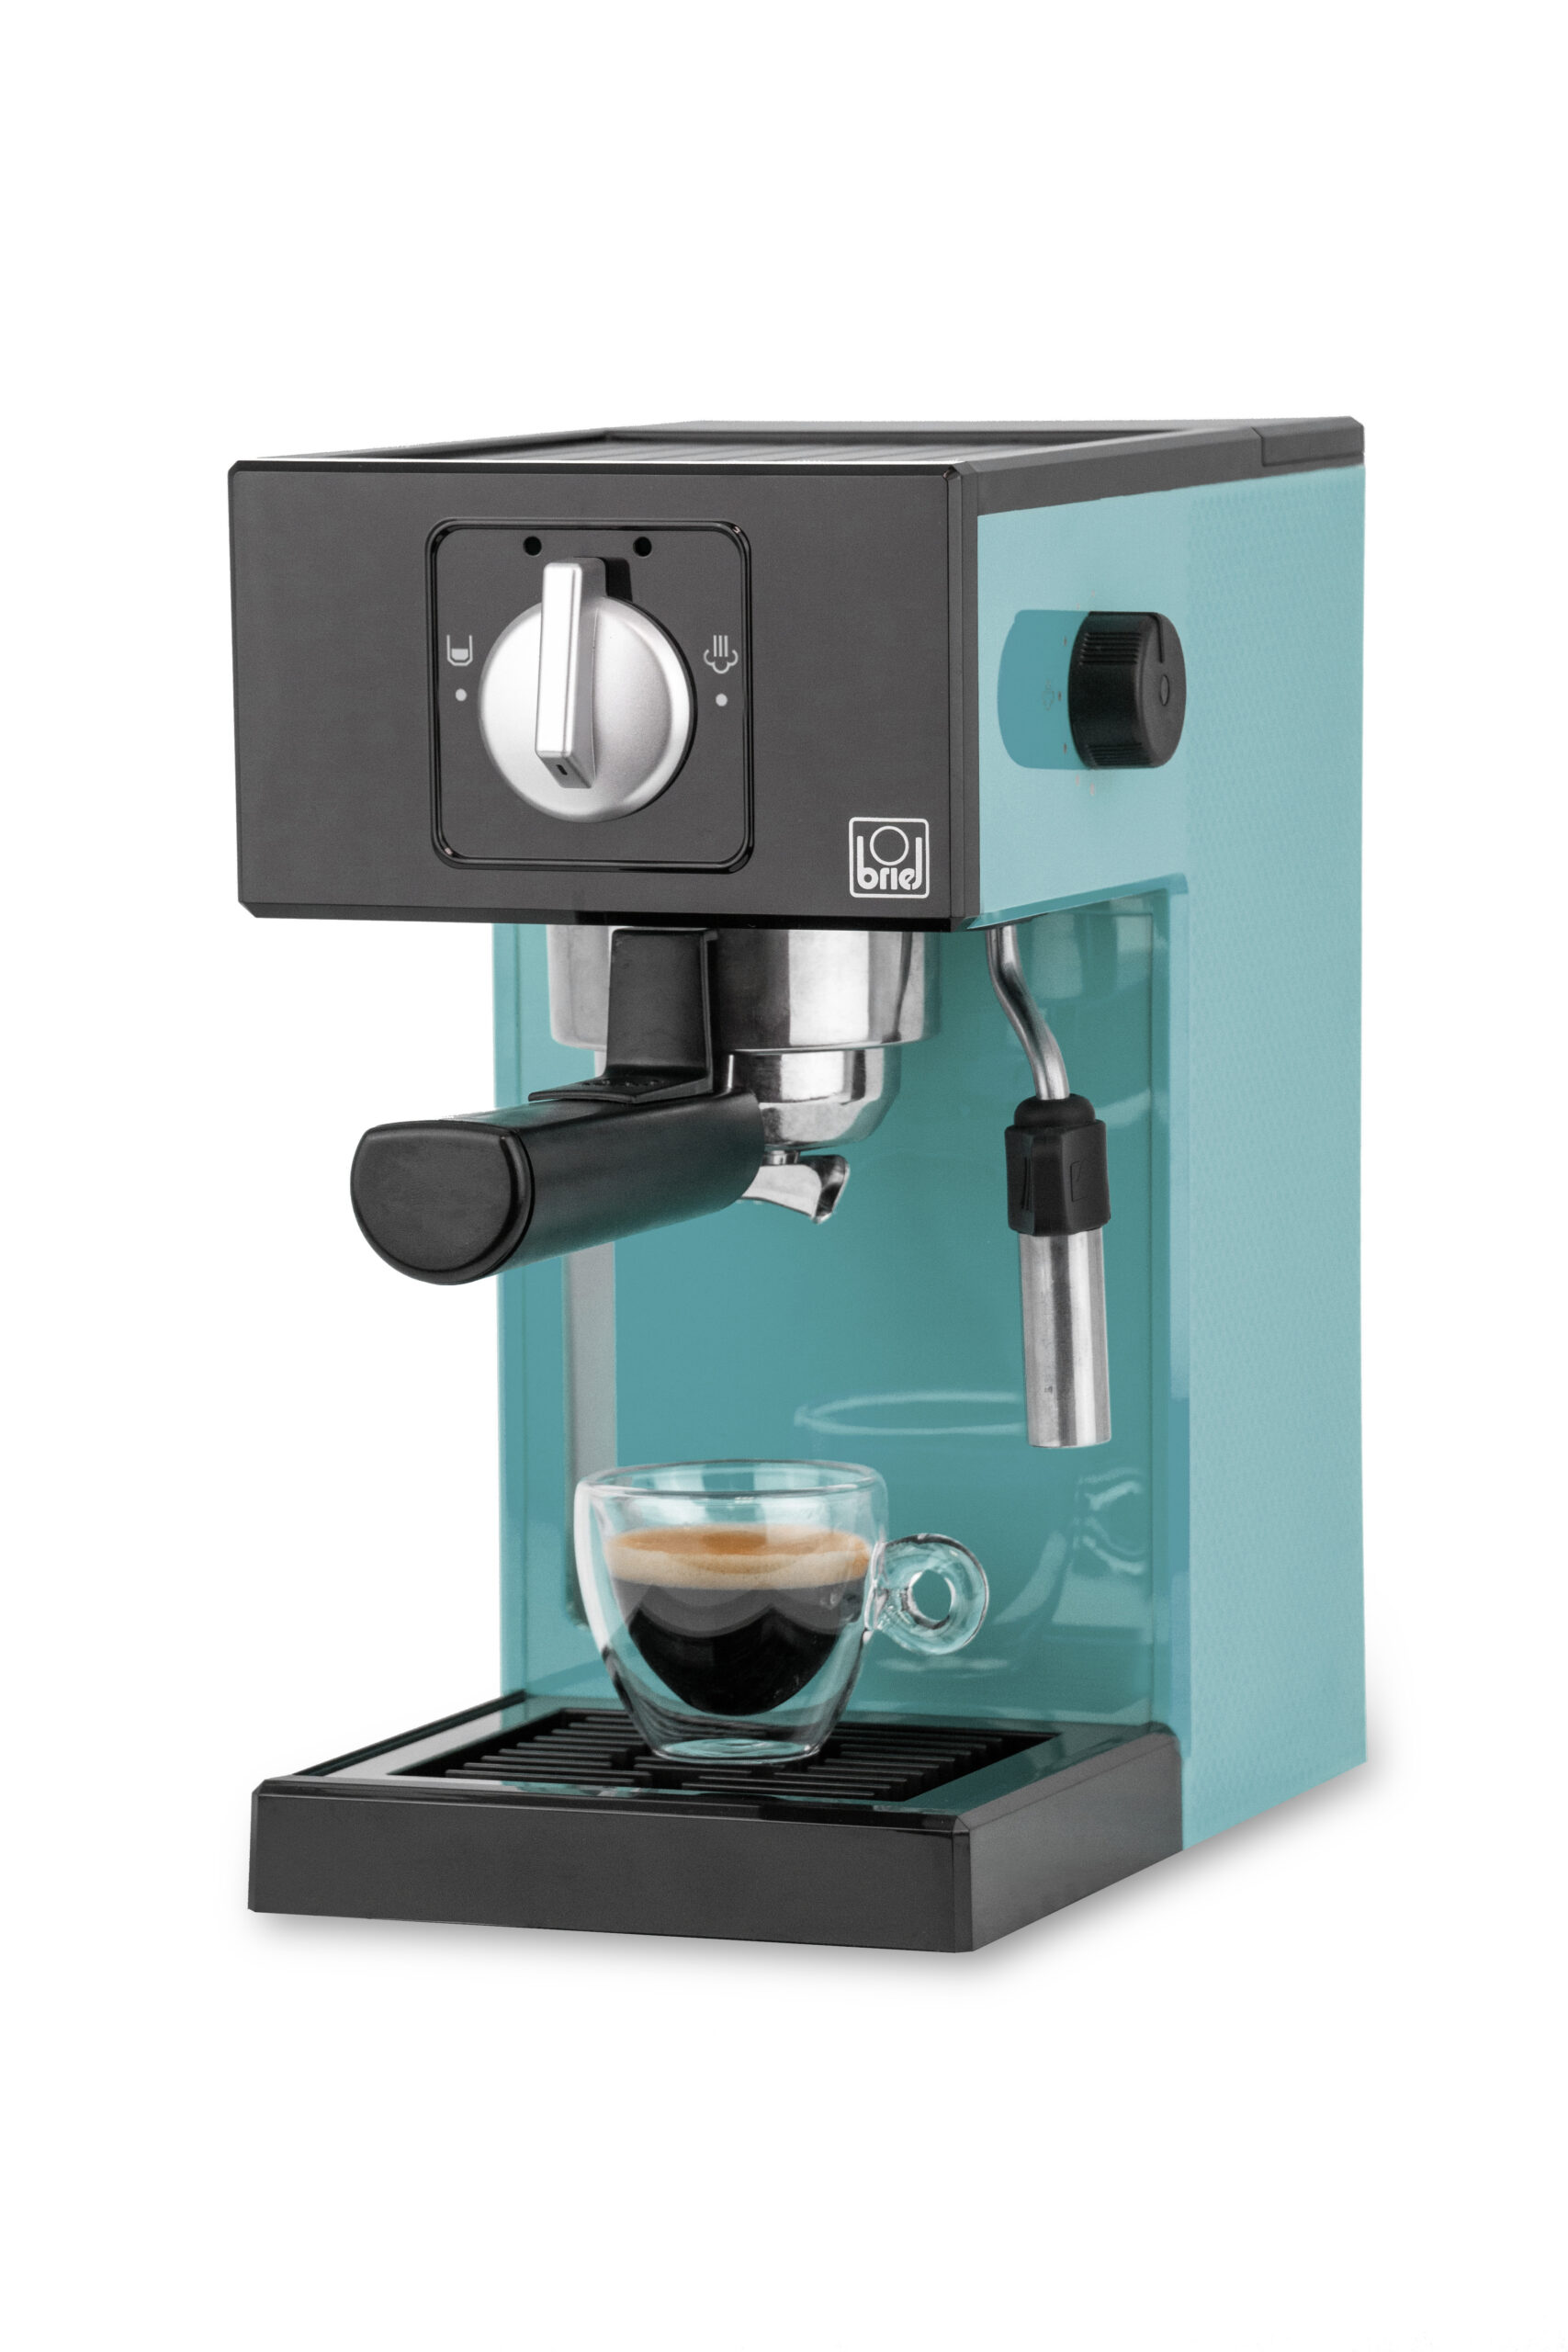 Maquina-cafe-espresso-A1-MANUAL-BLUE-7-scaled-1.jpg